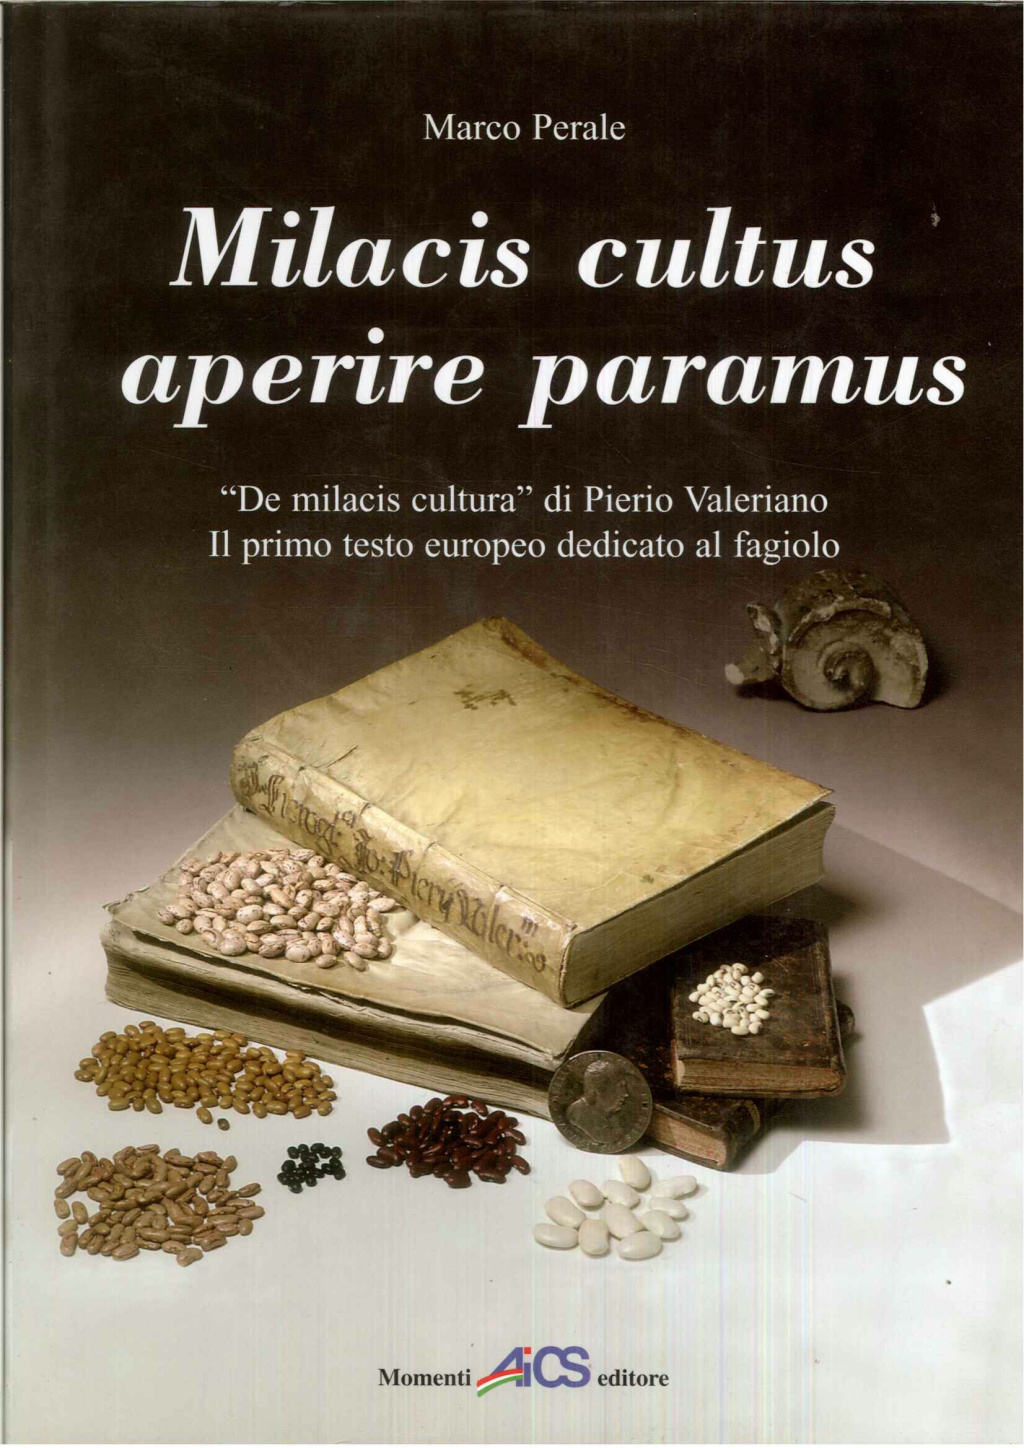  Milacis cultus aperire paramus. "De milacis cultura" di Piero Valeriano. Il primo testo europeo dedicato al fagiolo. 